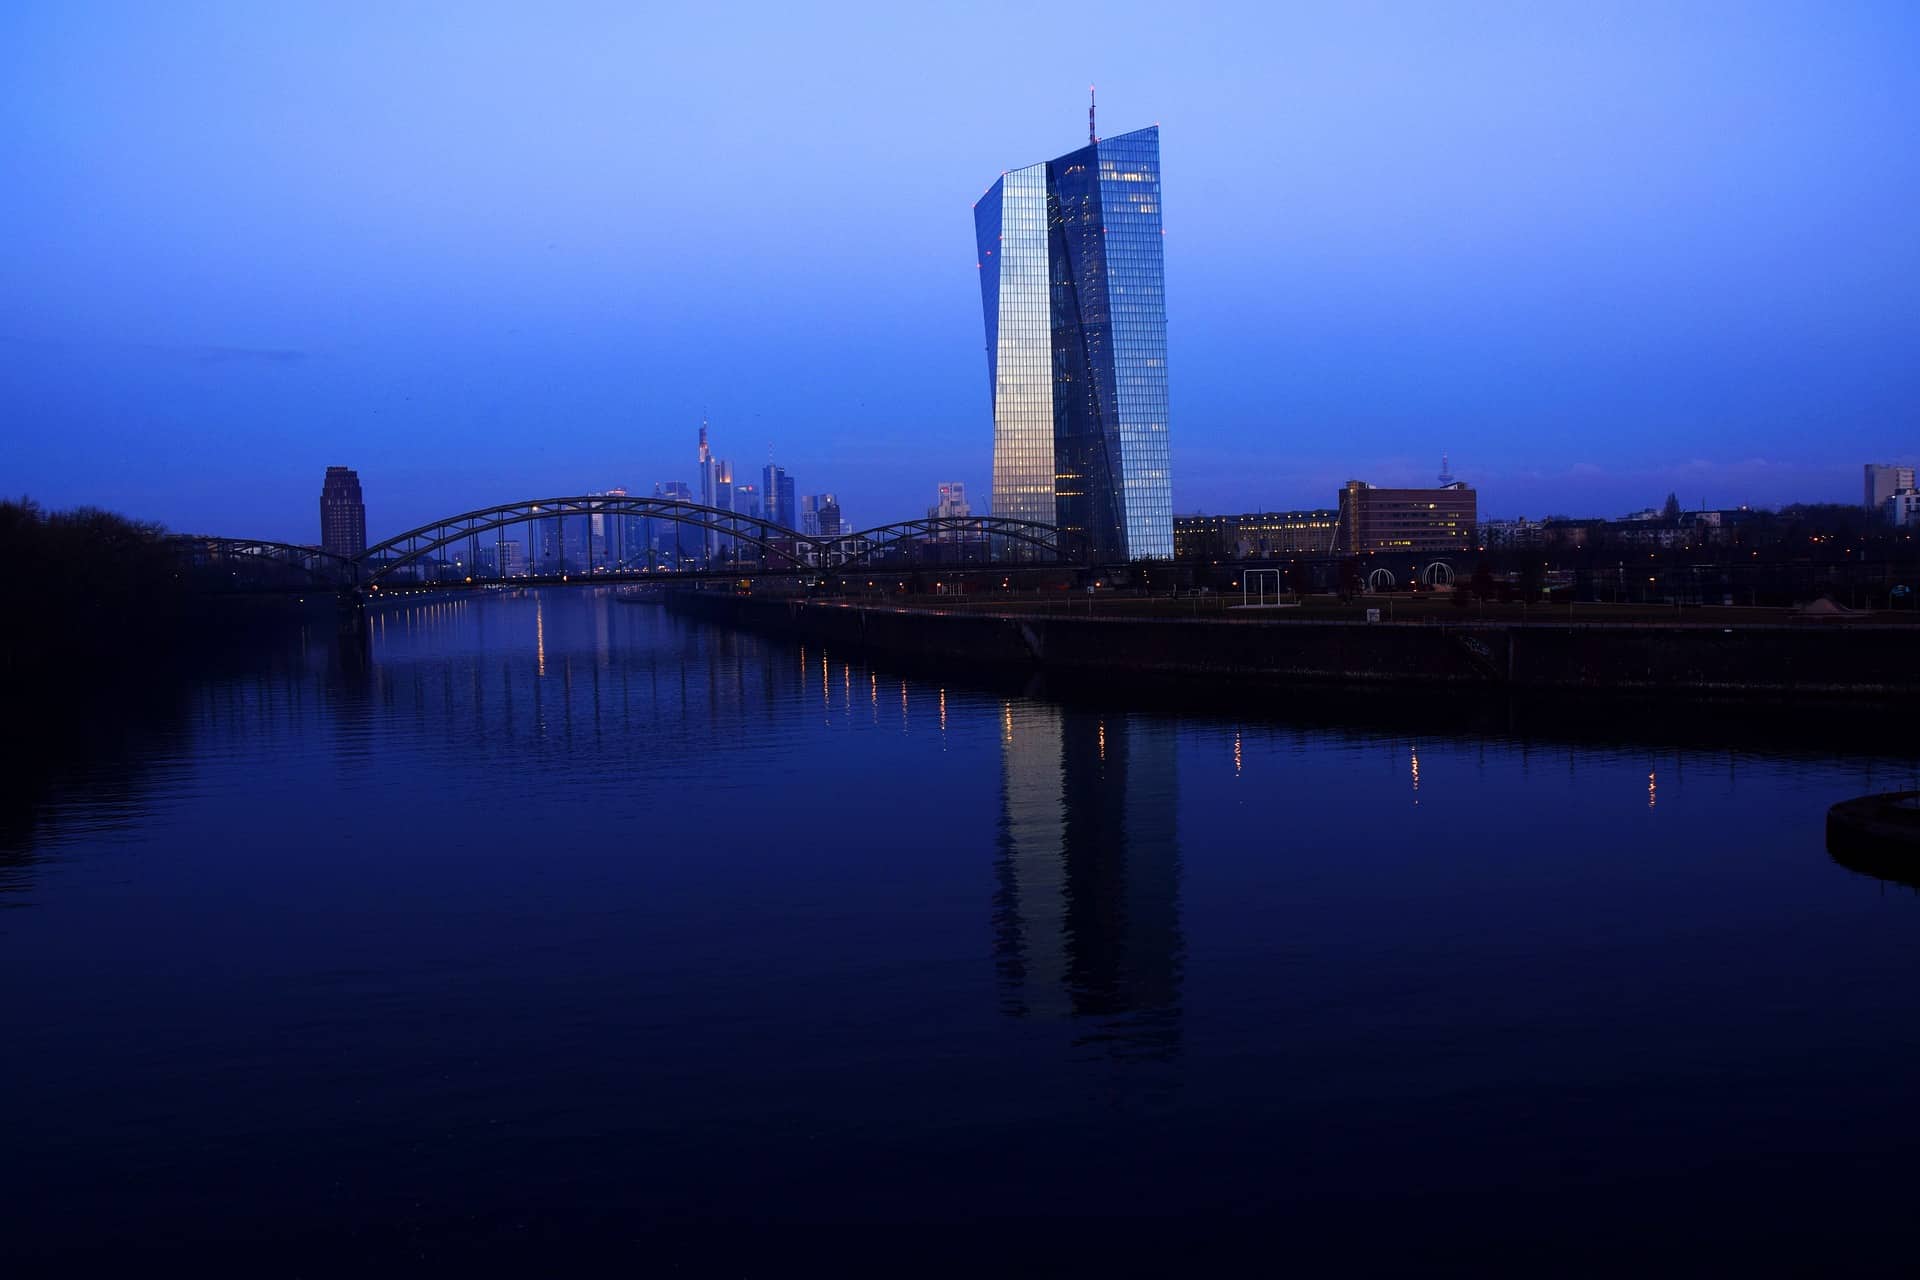 Europäische Zentralbank in Frankfurt bei Nacht